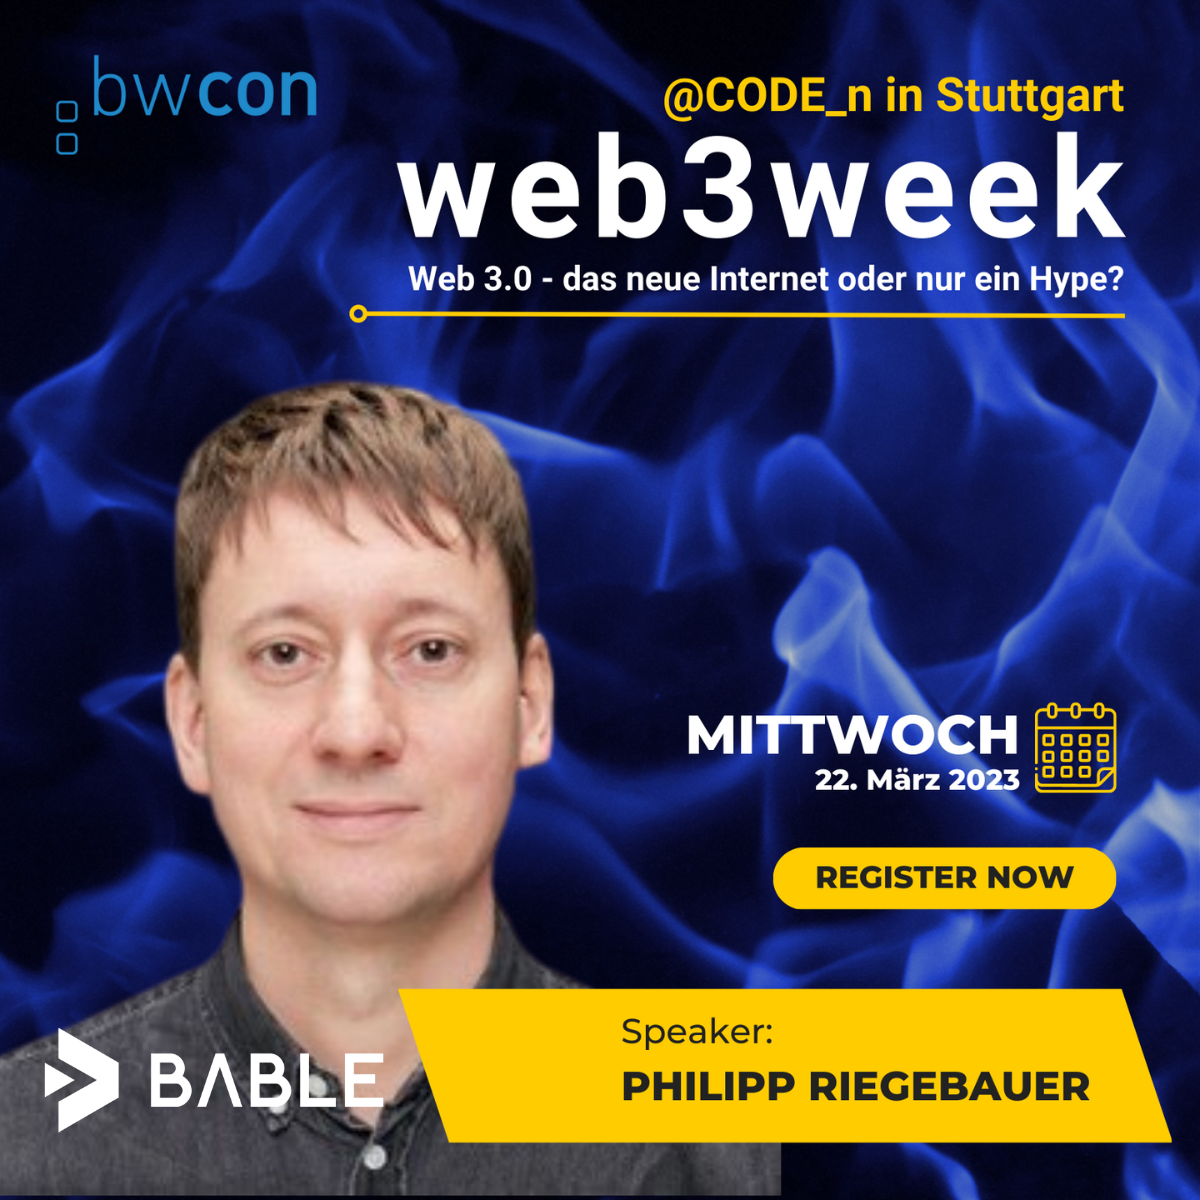 Web3week: Web 3.0 - das neue Internet oder nur ein Hype?